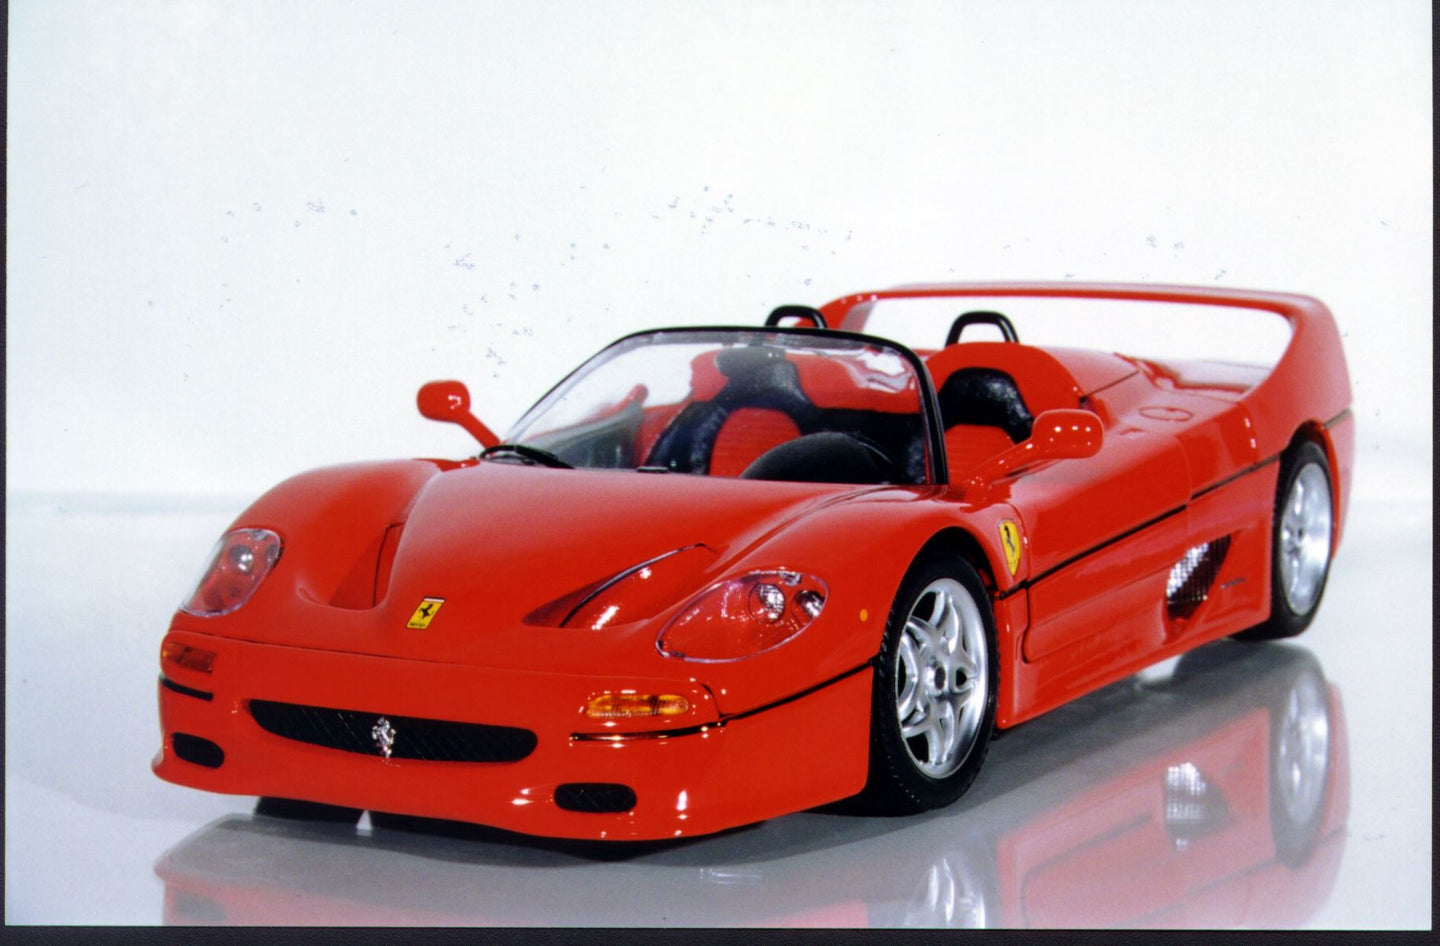 1:18 Bburago Ferrari F50 Barchetta Convertible